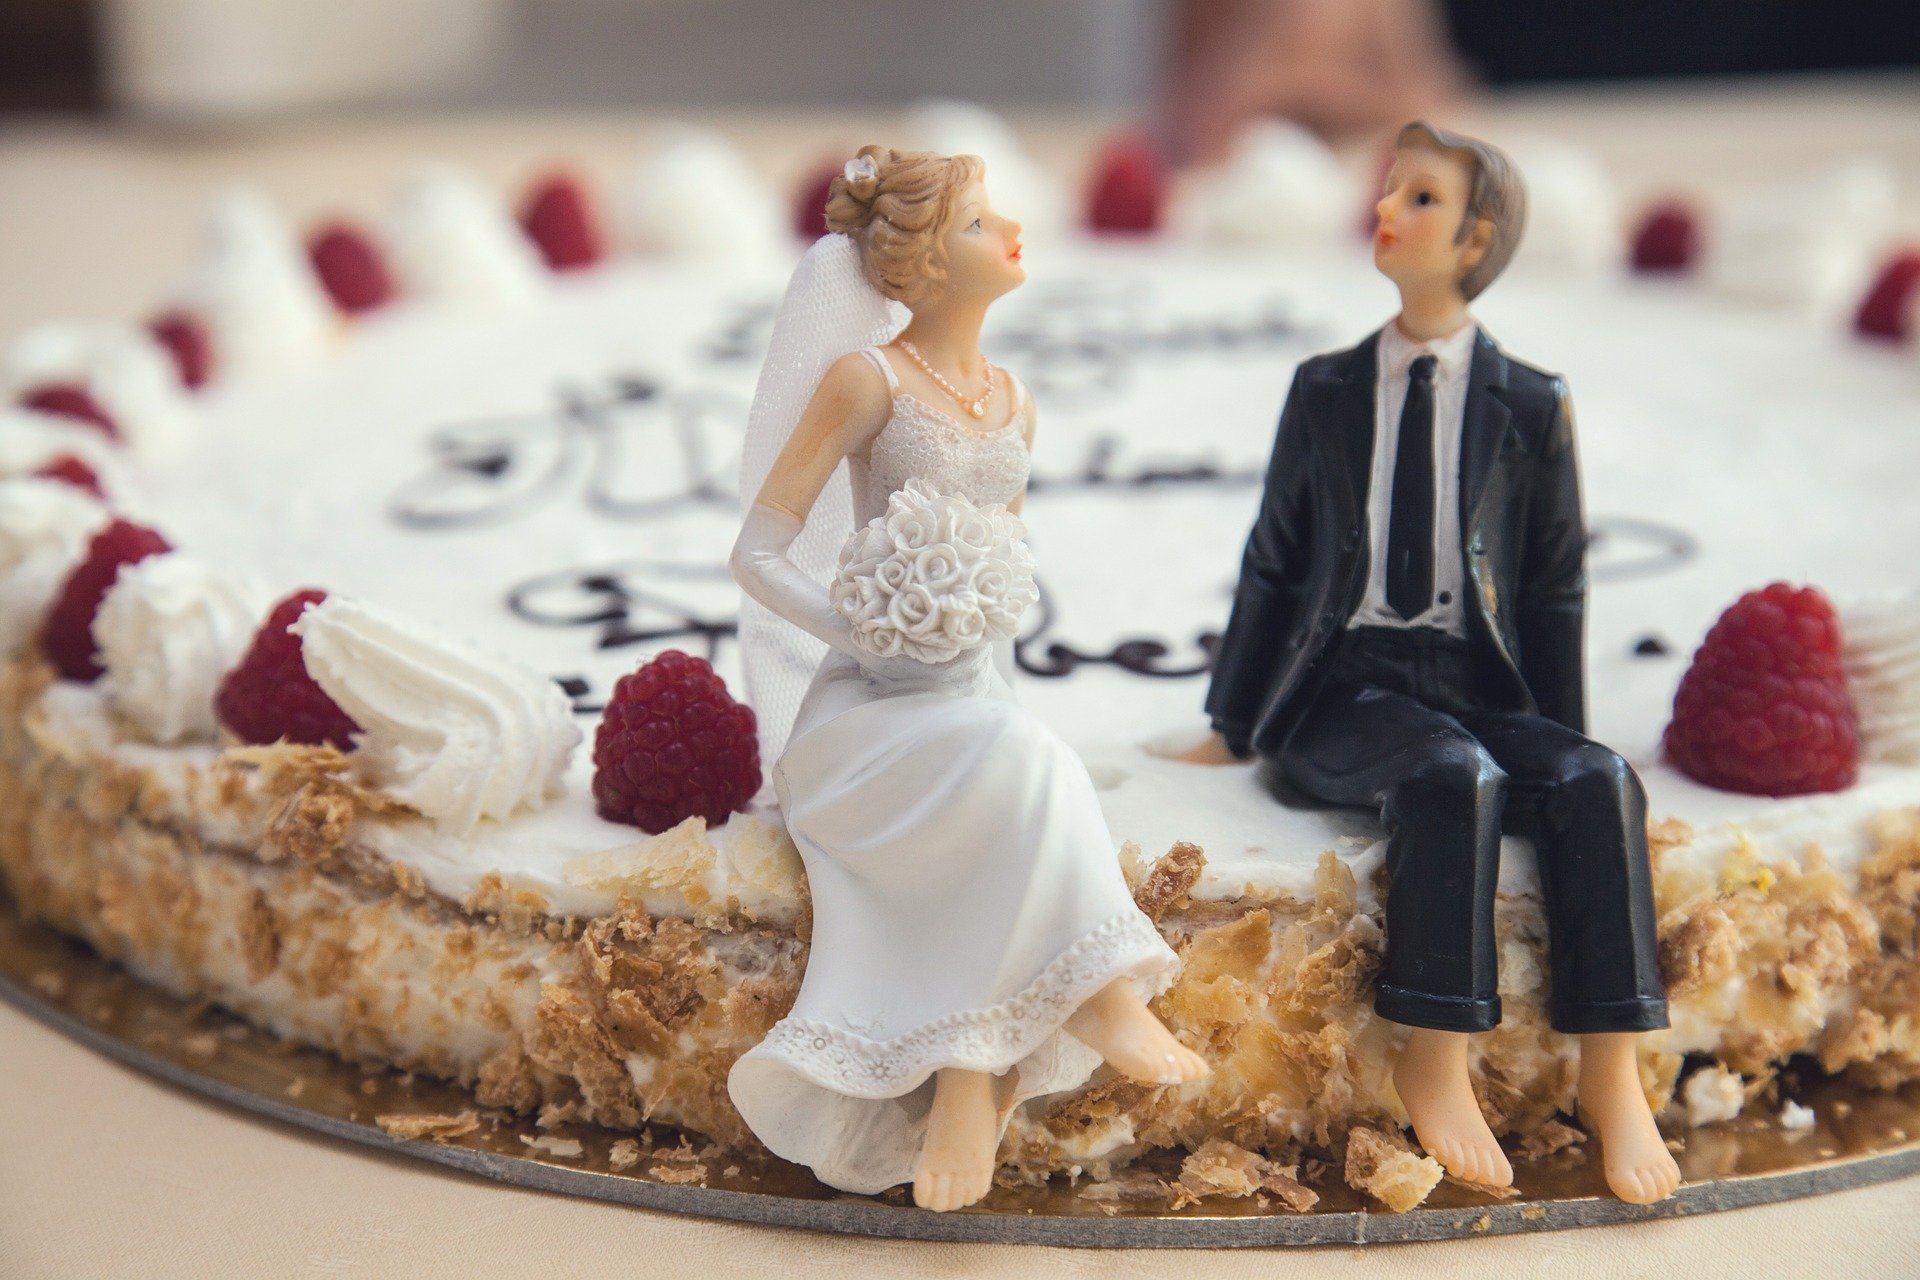 Если вы или кто-то из ваших близких хорошо печете торты и пироги, вам ни к чему тратить деньги на дорогого кондитера для вашей мини-свадьбы..